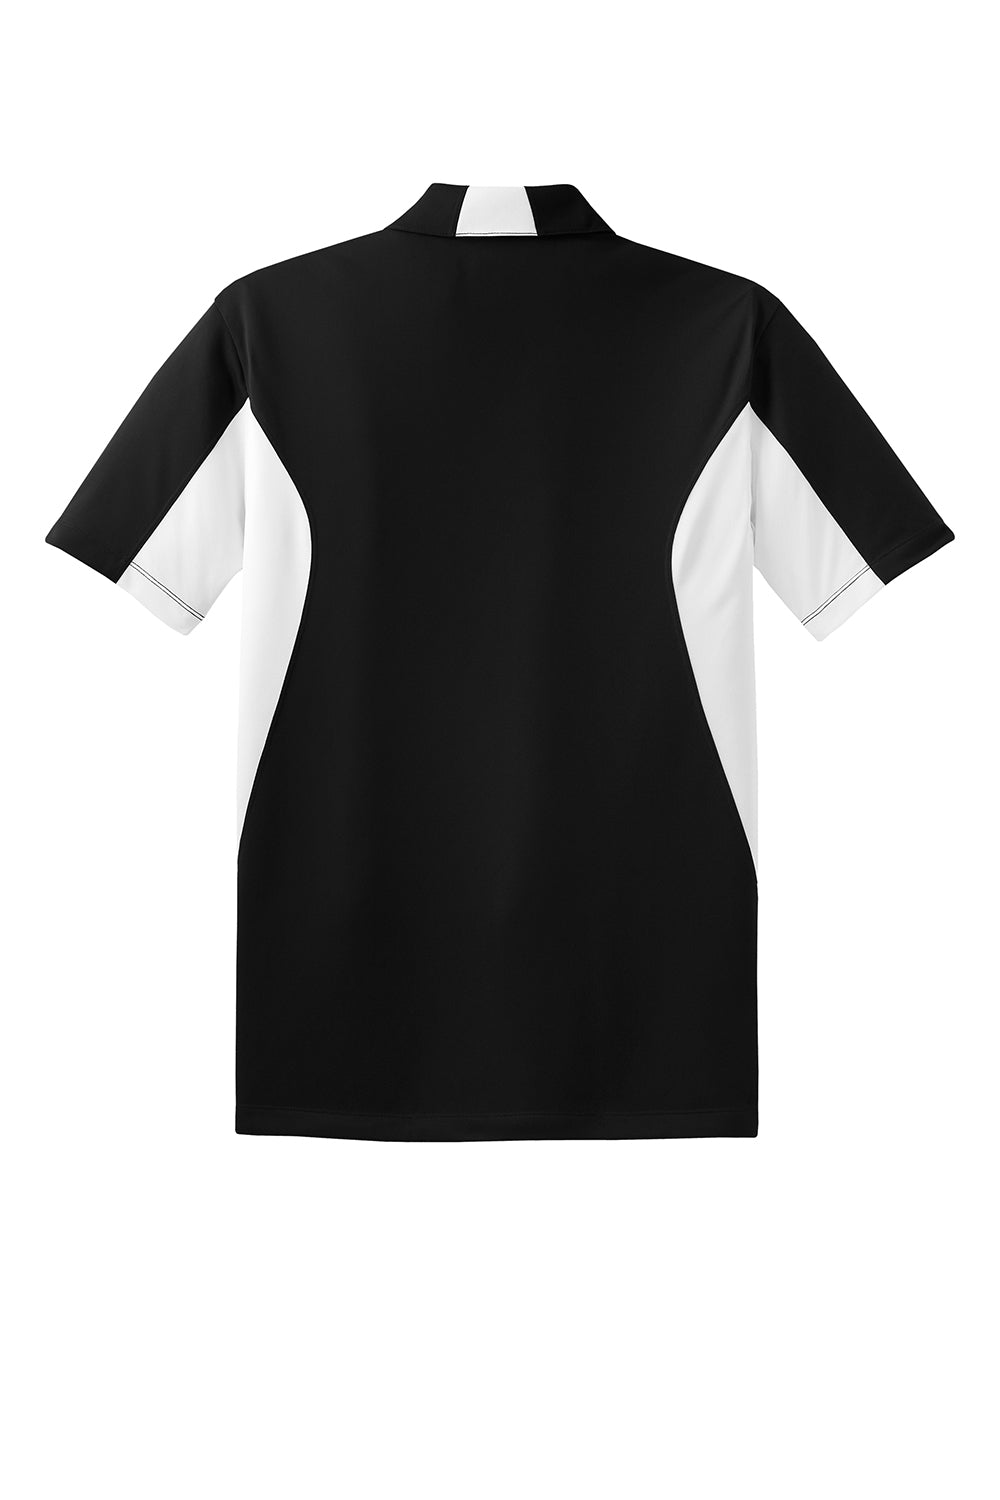 Sport-Tek Mens Sport-Wick Moisture Wicking Short Sleeve Polo Shirt Black/White Flat Back